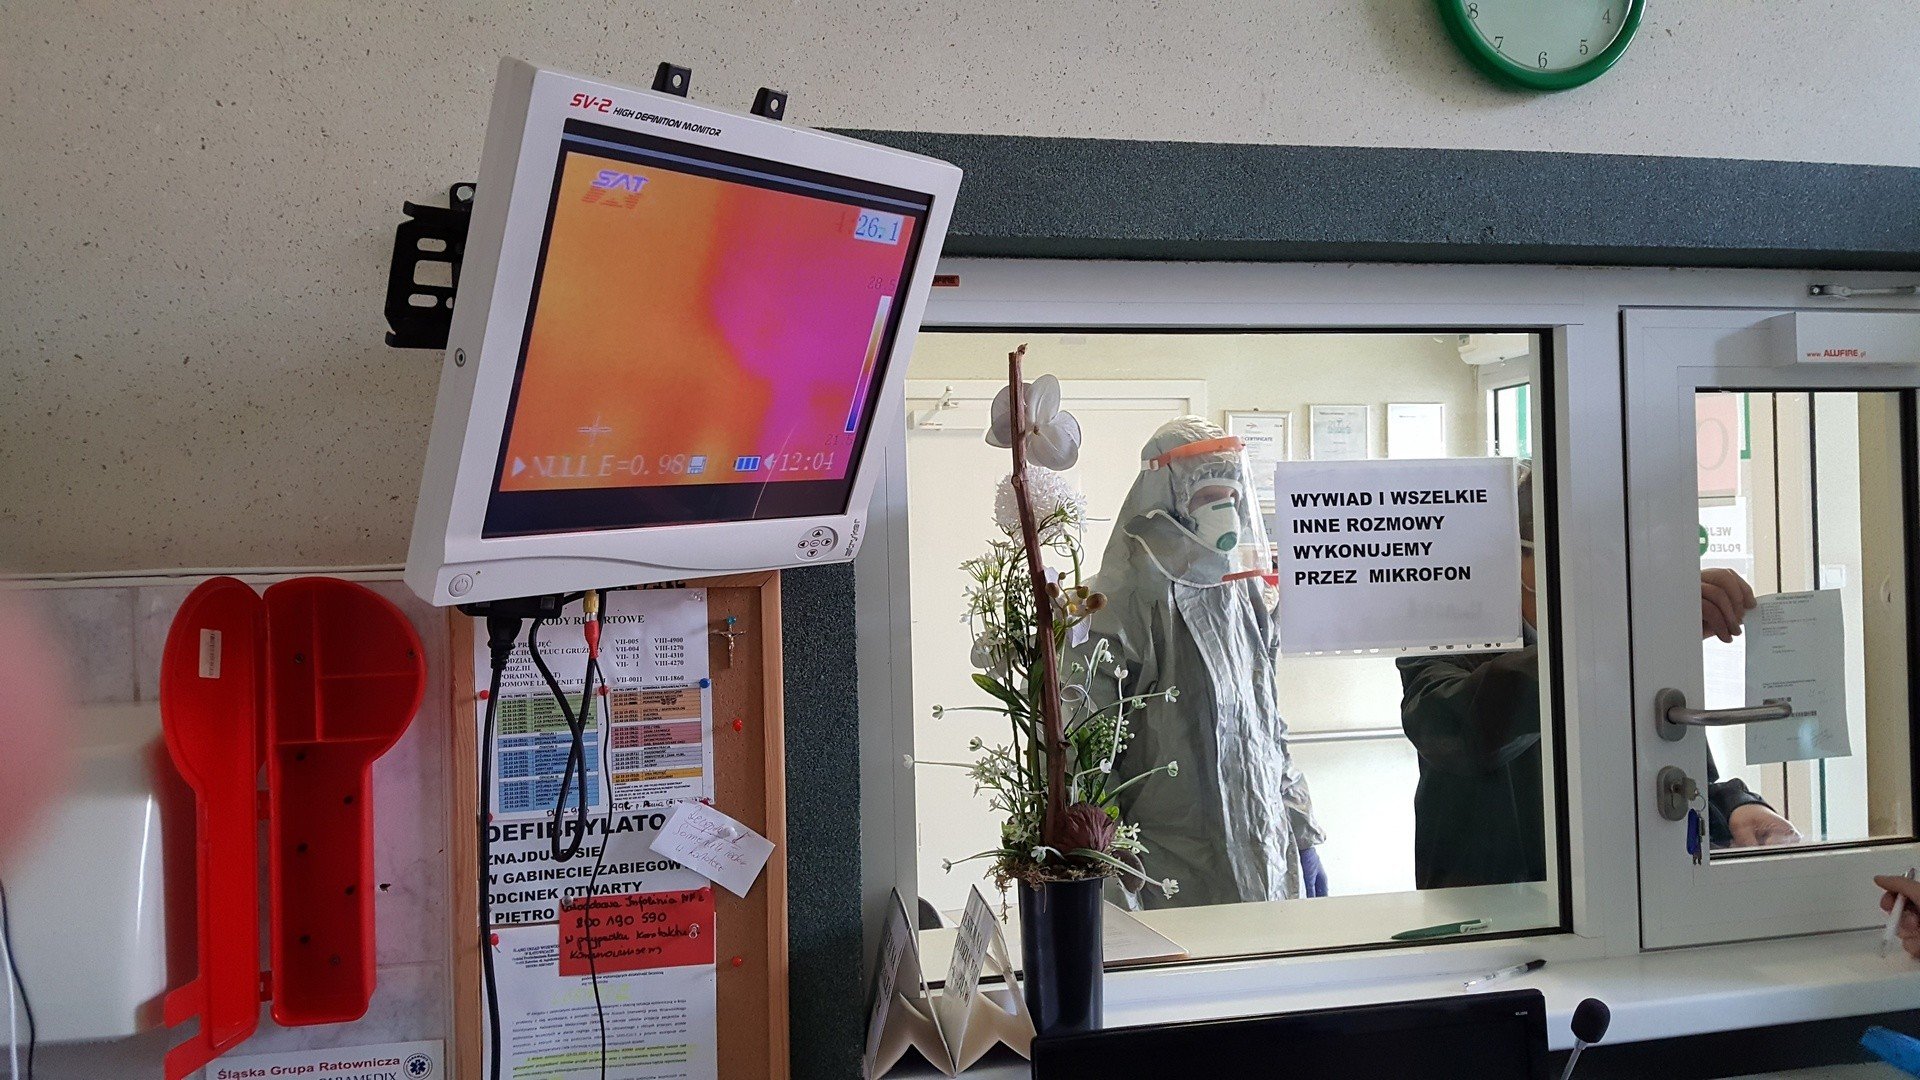 Przychodnie zdrowia w Gliwicach mierzą pacjentom temperaturę kamerą  termowizyjną. System stworzyli naukowcy z Politechniki Śląskiej | Dziennik  Zachodni